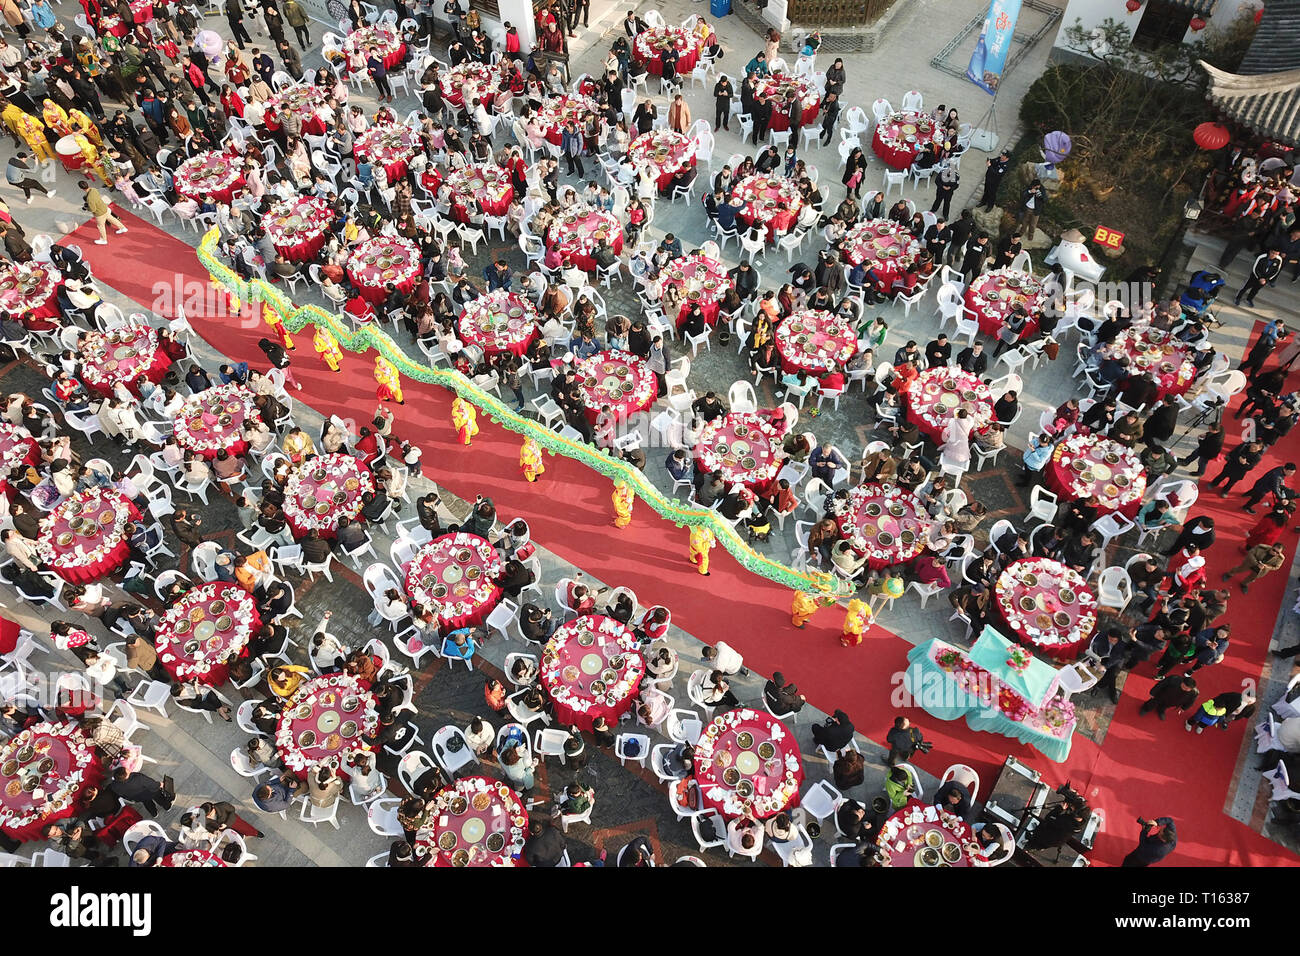 Huai'an, Cina. 23 Mar, 2019. Foto aerea adottate il 23 marzo 2019 mostra la gente che ottiene insieme per degustare i piatti fatti di Luosi, una sorta di fiume lumaca, durante una festa che si tiene in Jiangba township di Hongze distretto di Huai'an City, est della Cina. Piatti di Luosi sono solitamente venduti presso bancarelle in Cina. Credit: Wan Zhen/Xinhua/Alamy Live News Foto Stock